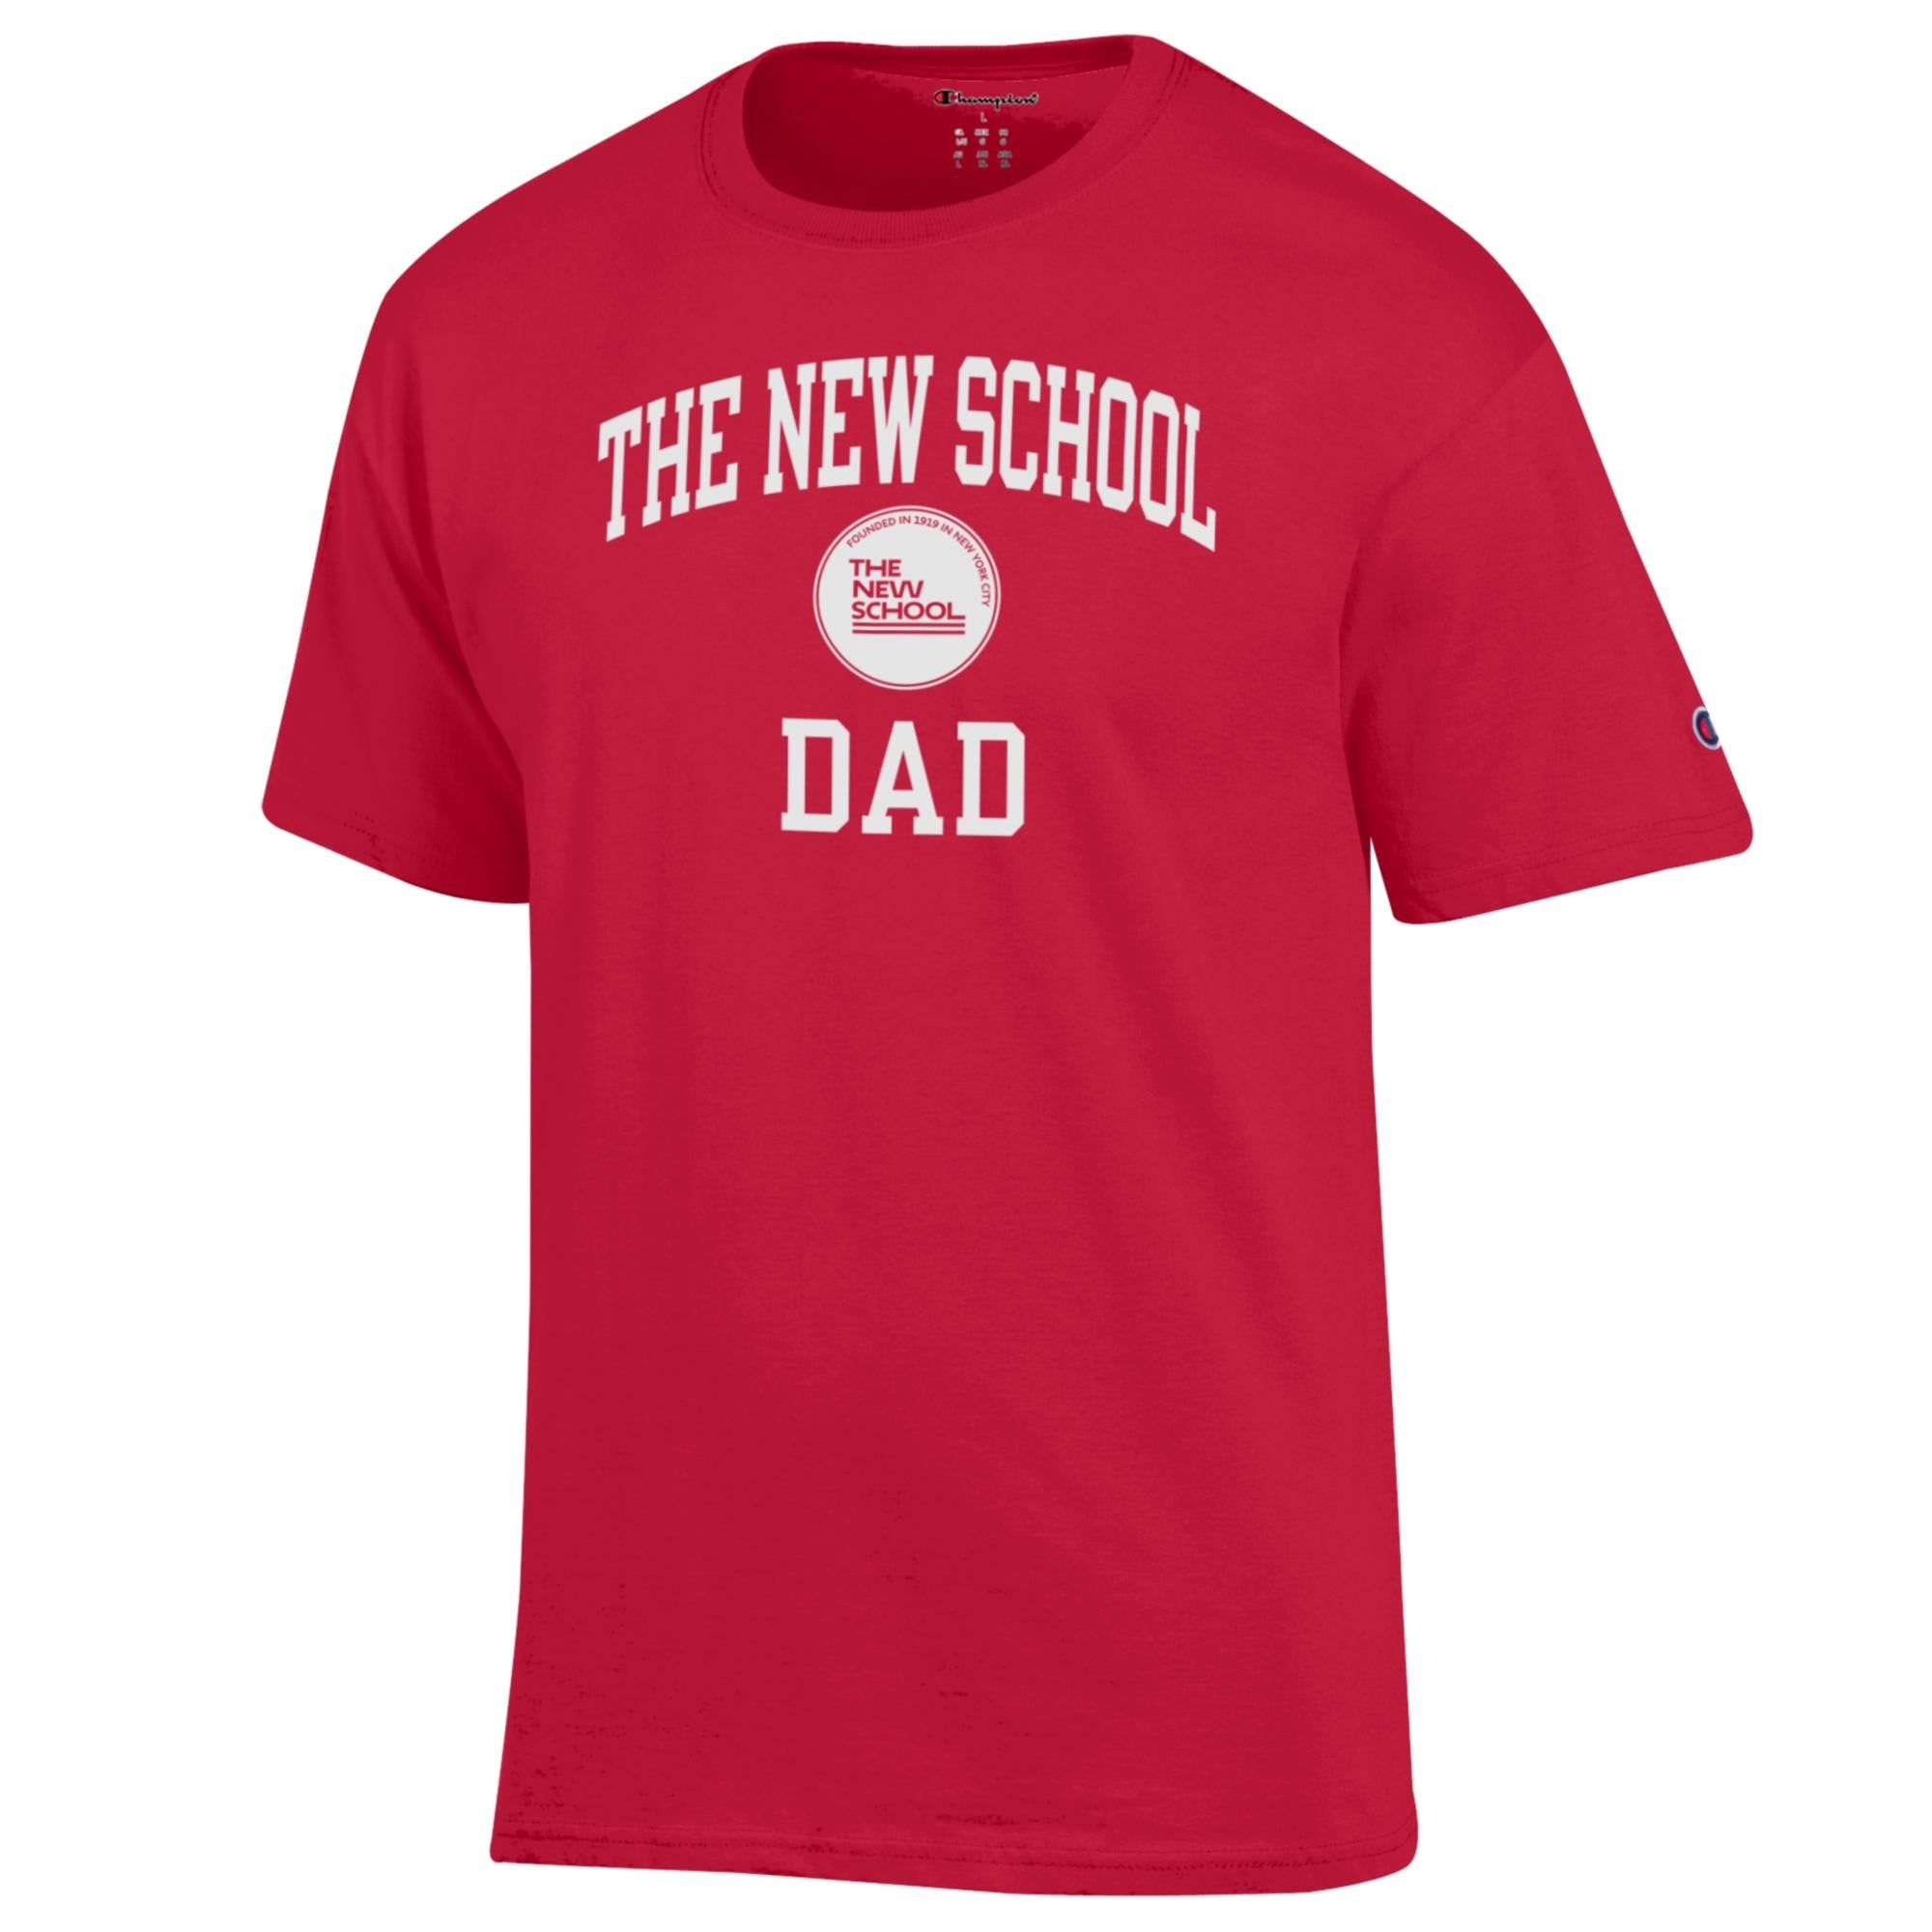 Dad T-Shirt